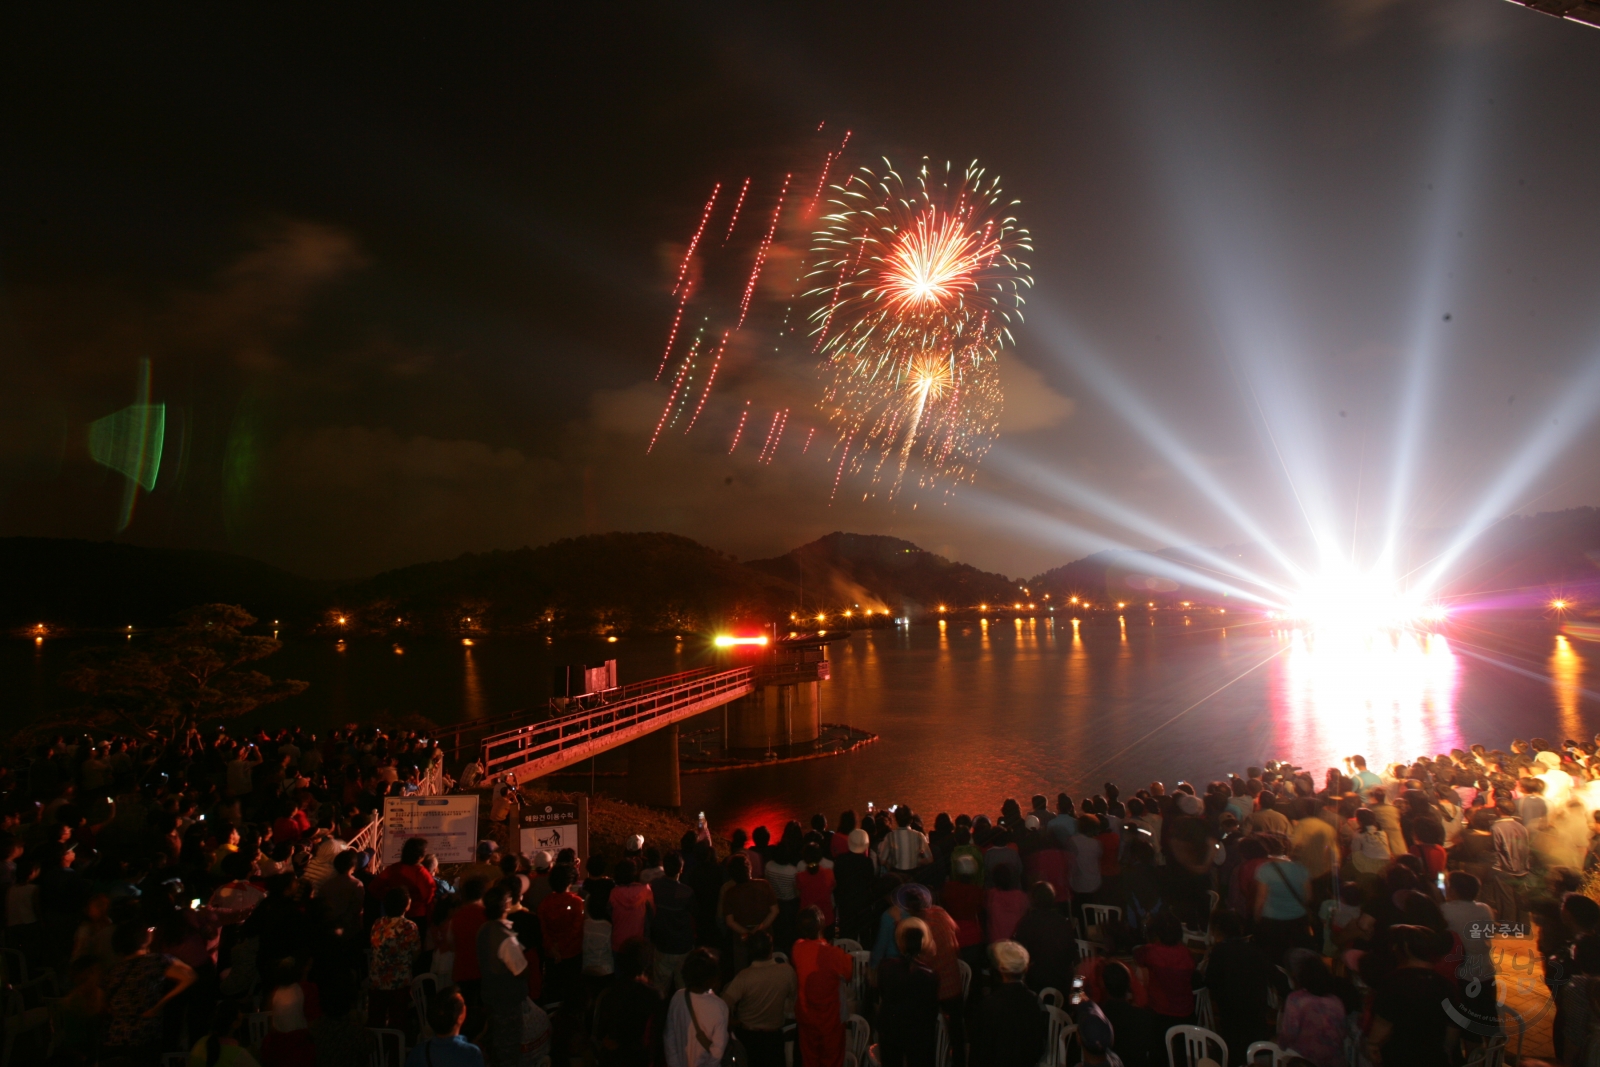 2009 선암호수 불꽃축제 의 사진